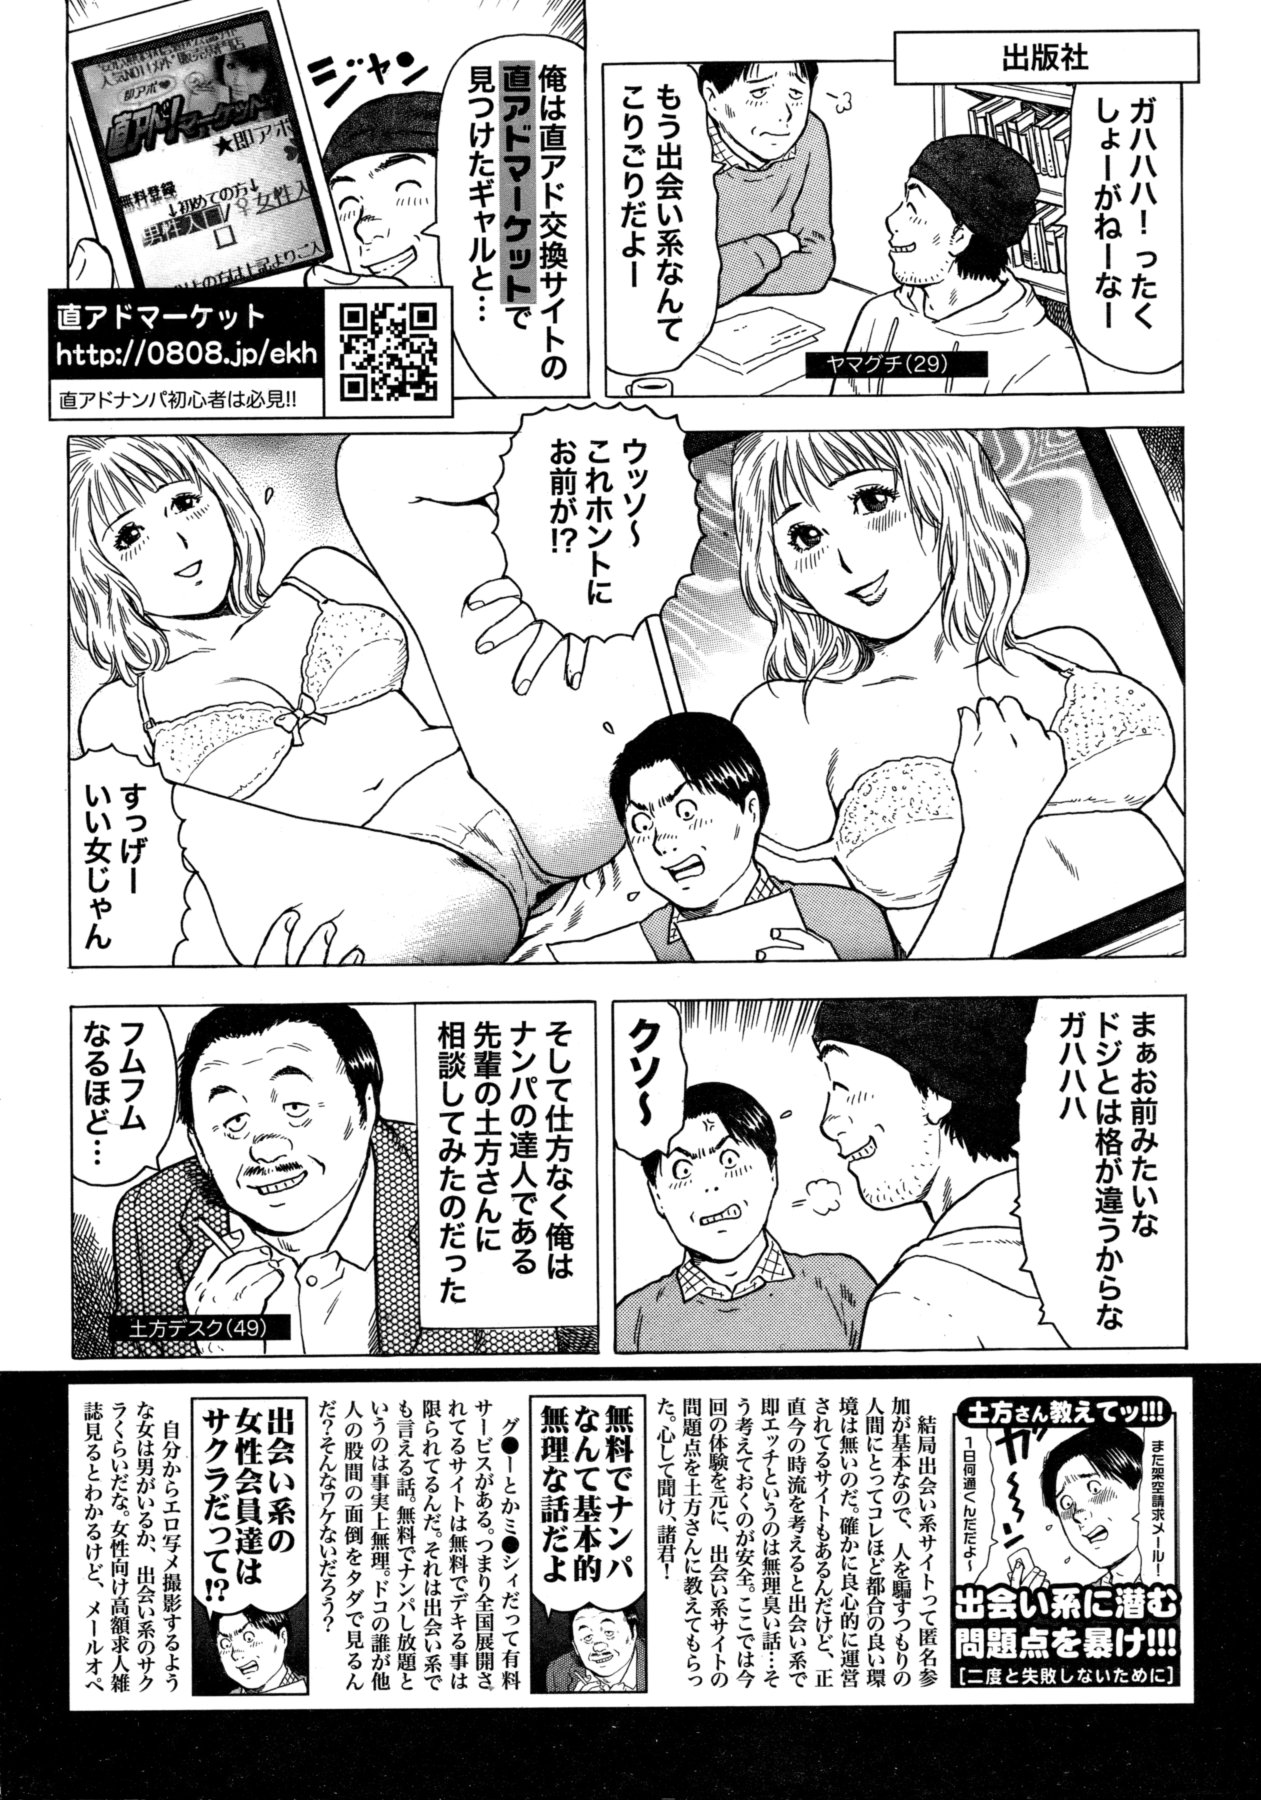 [雑誌] COMIC 失楽天 Vol.05 COMIC 快楽天 2011年11月号増刊